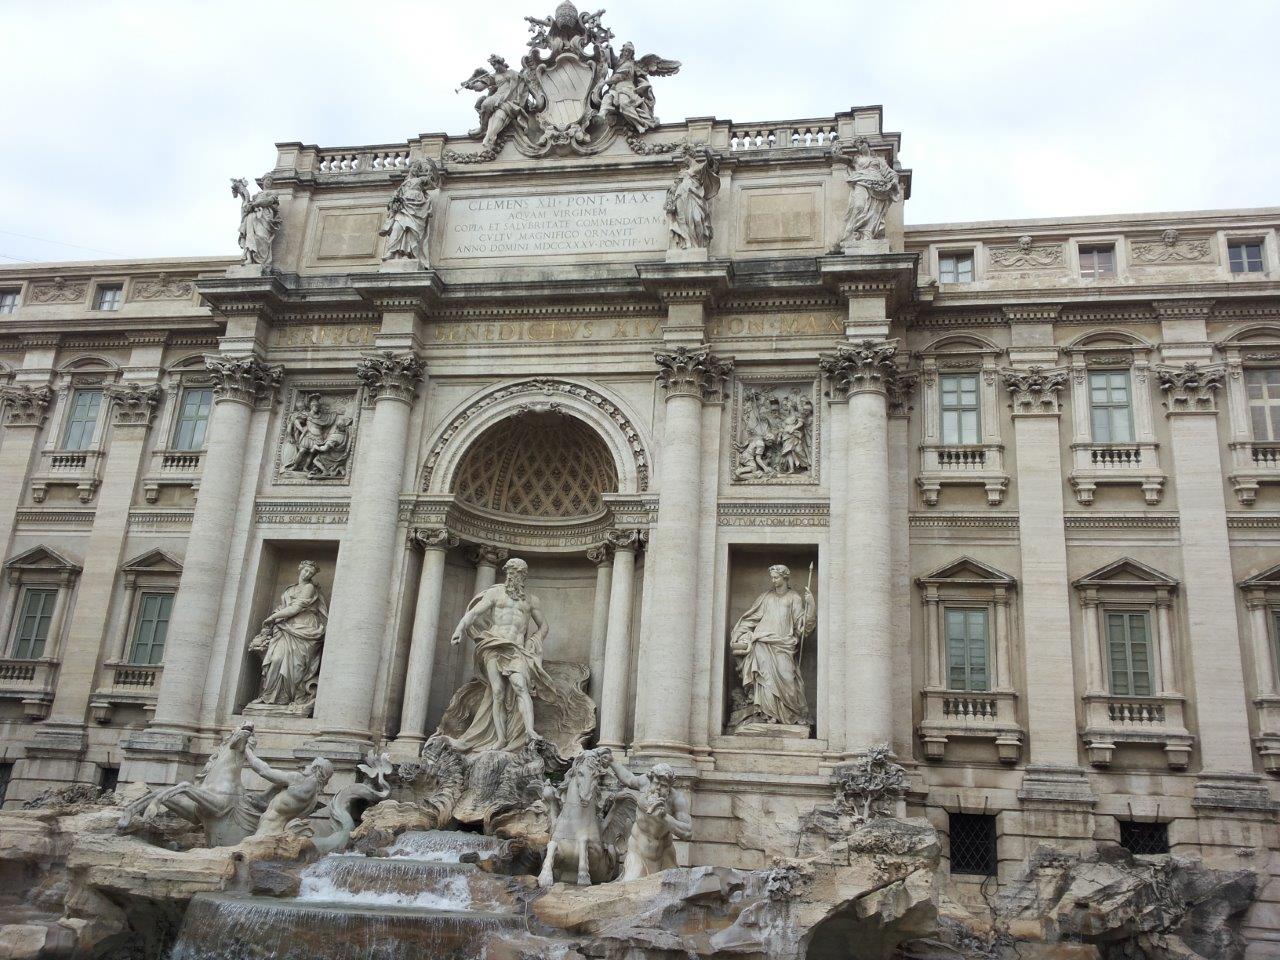 Cosa vedere fare a Roma in 24 ore - fontana di trevi roma